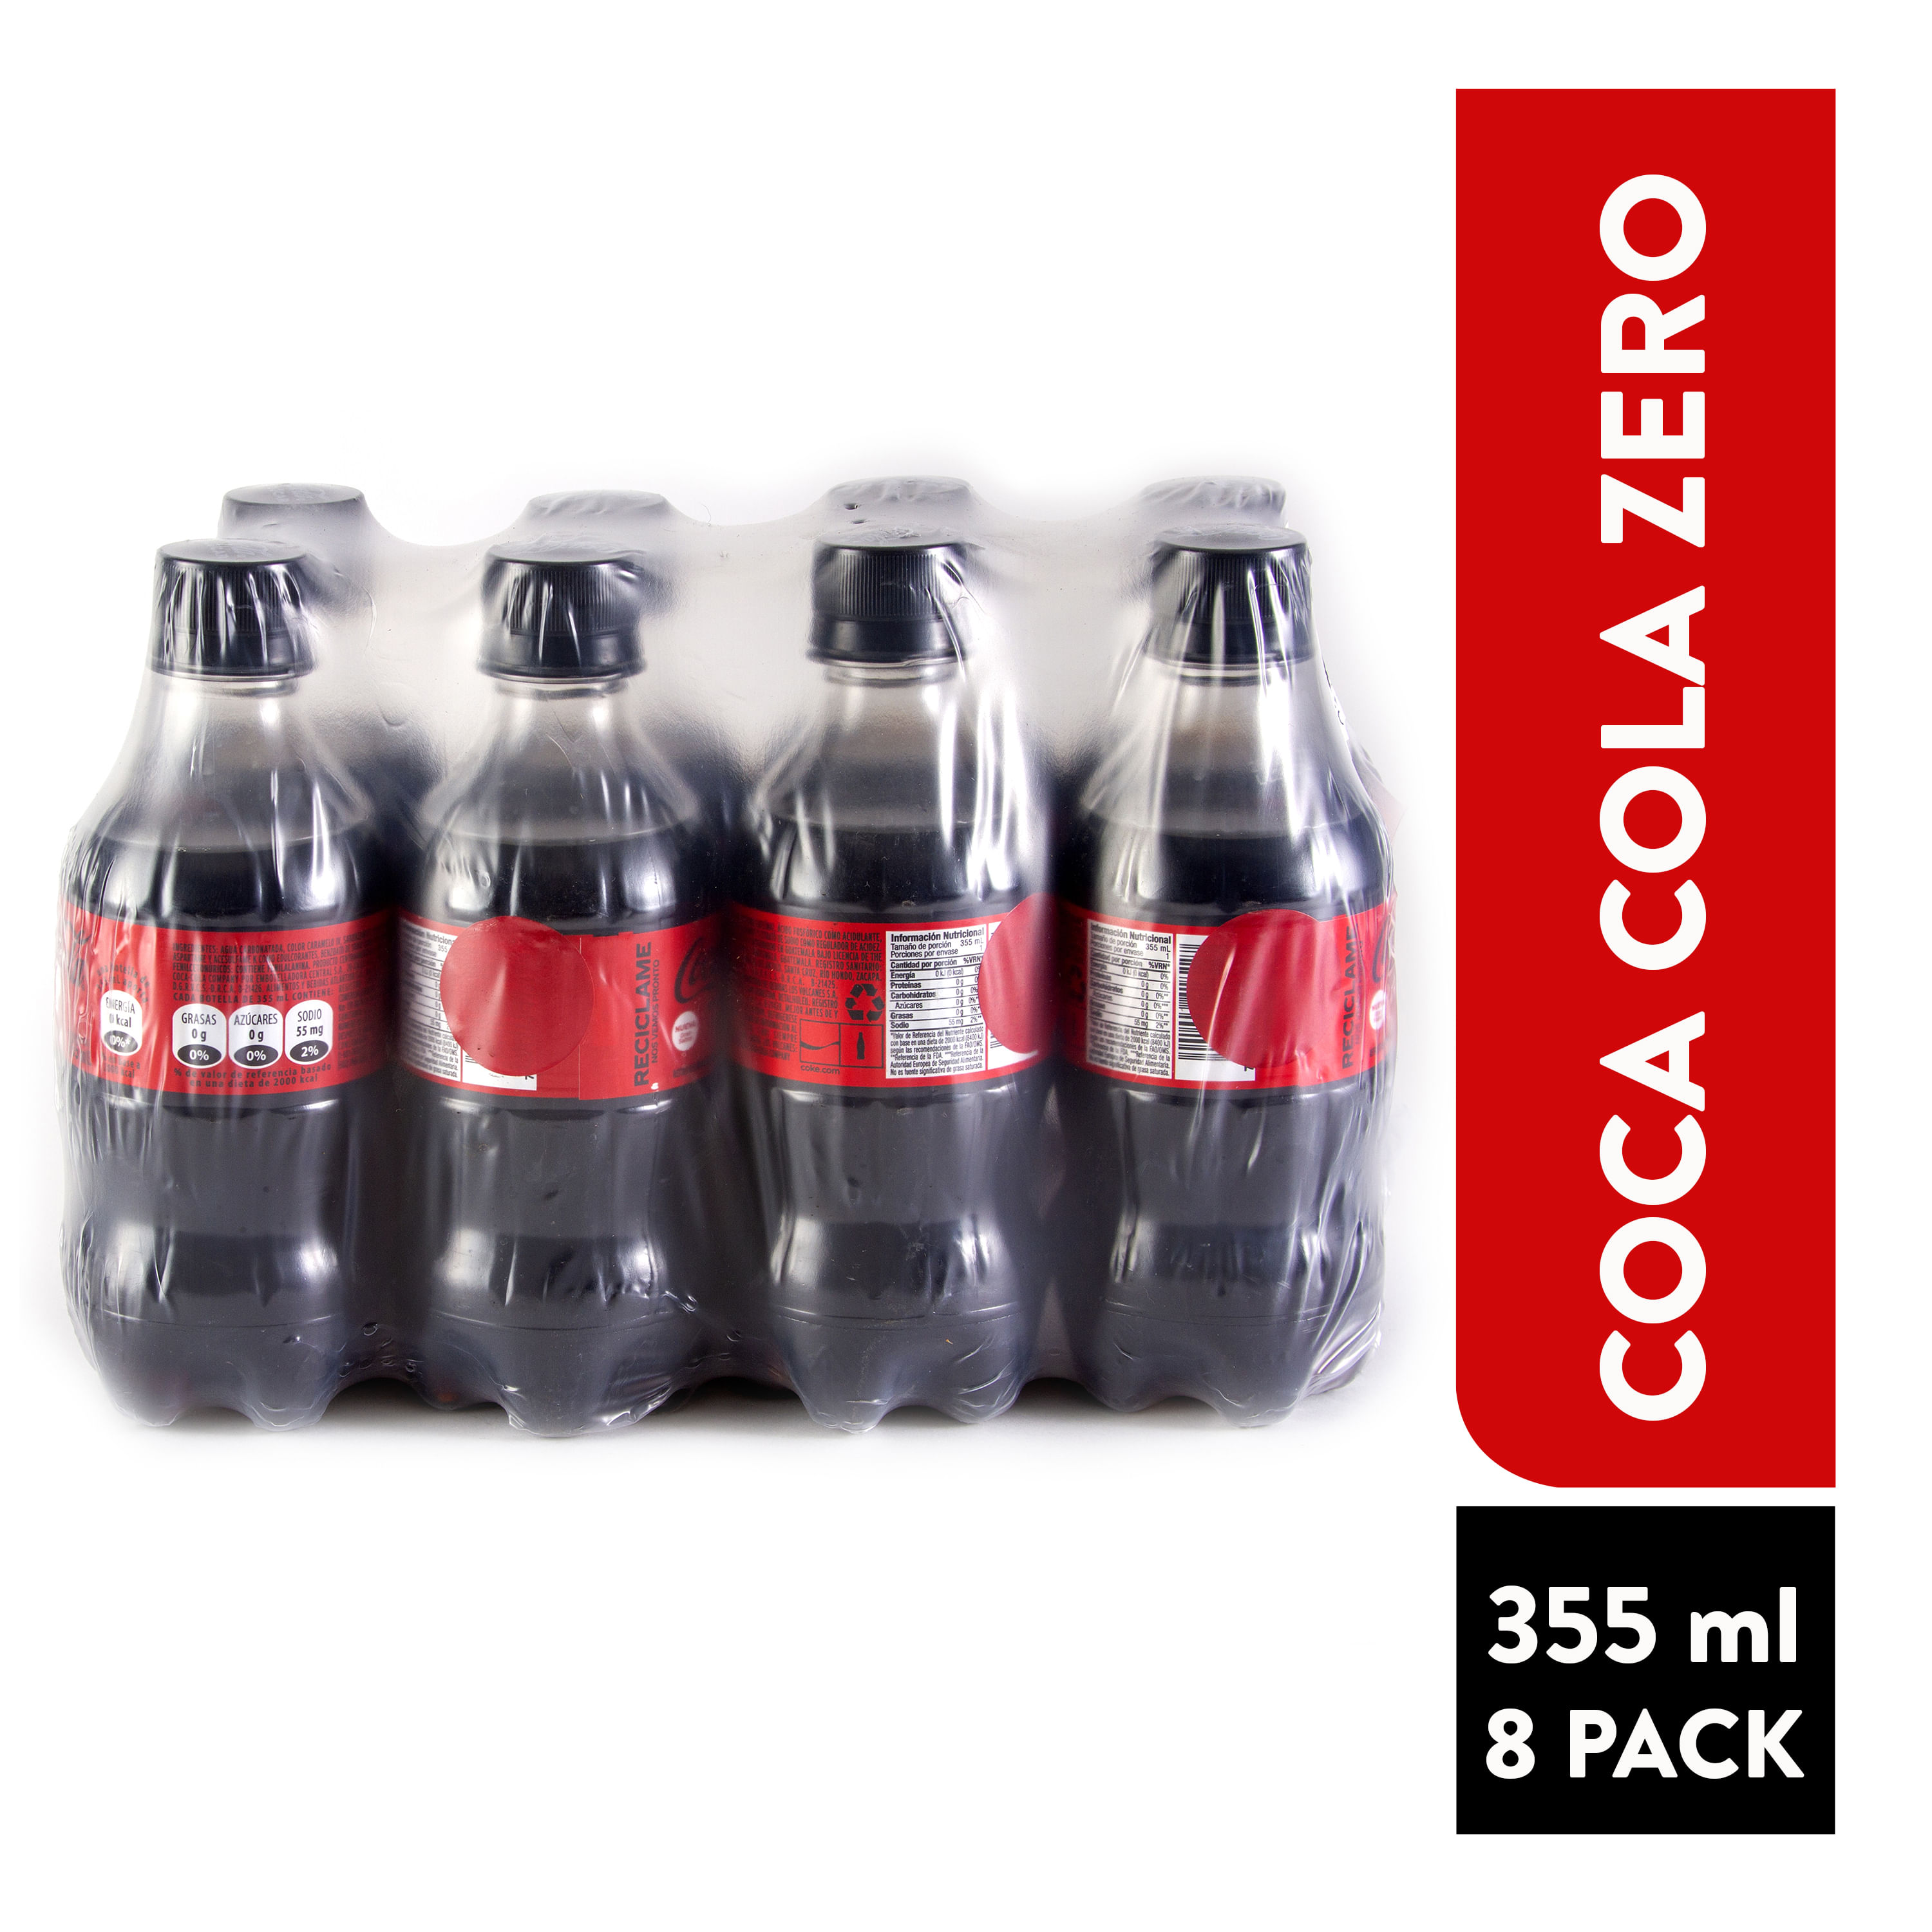 Refresco Coca Cola sin azúcar 2.5 l